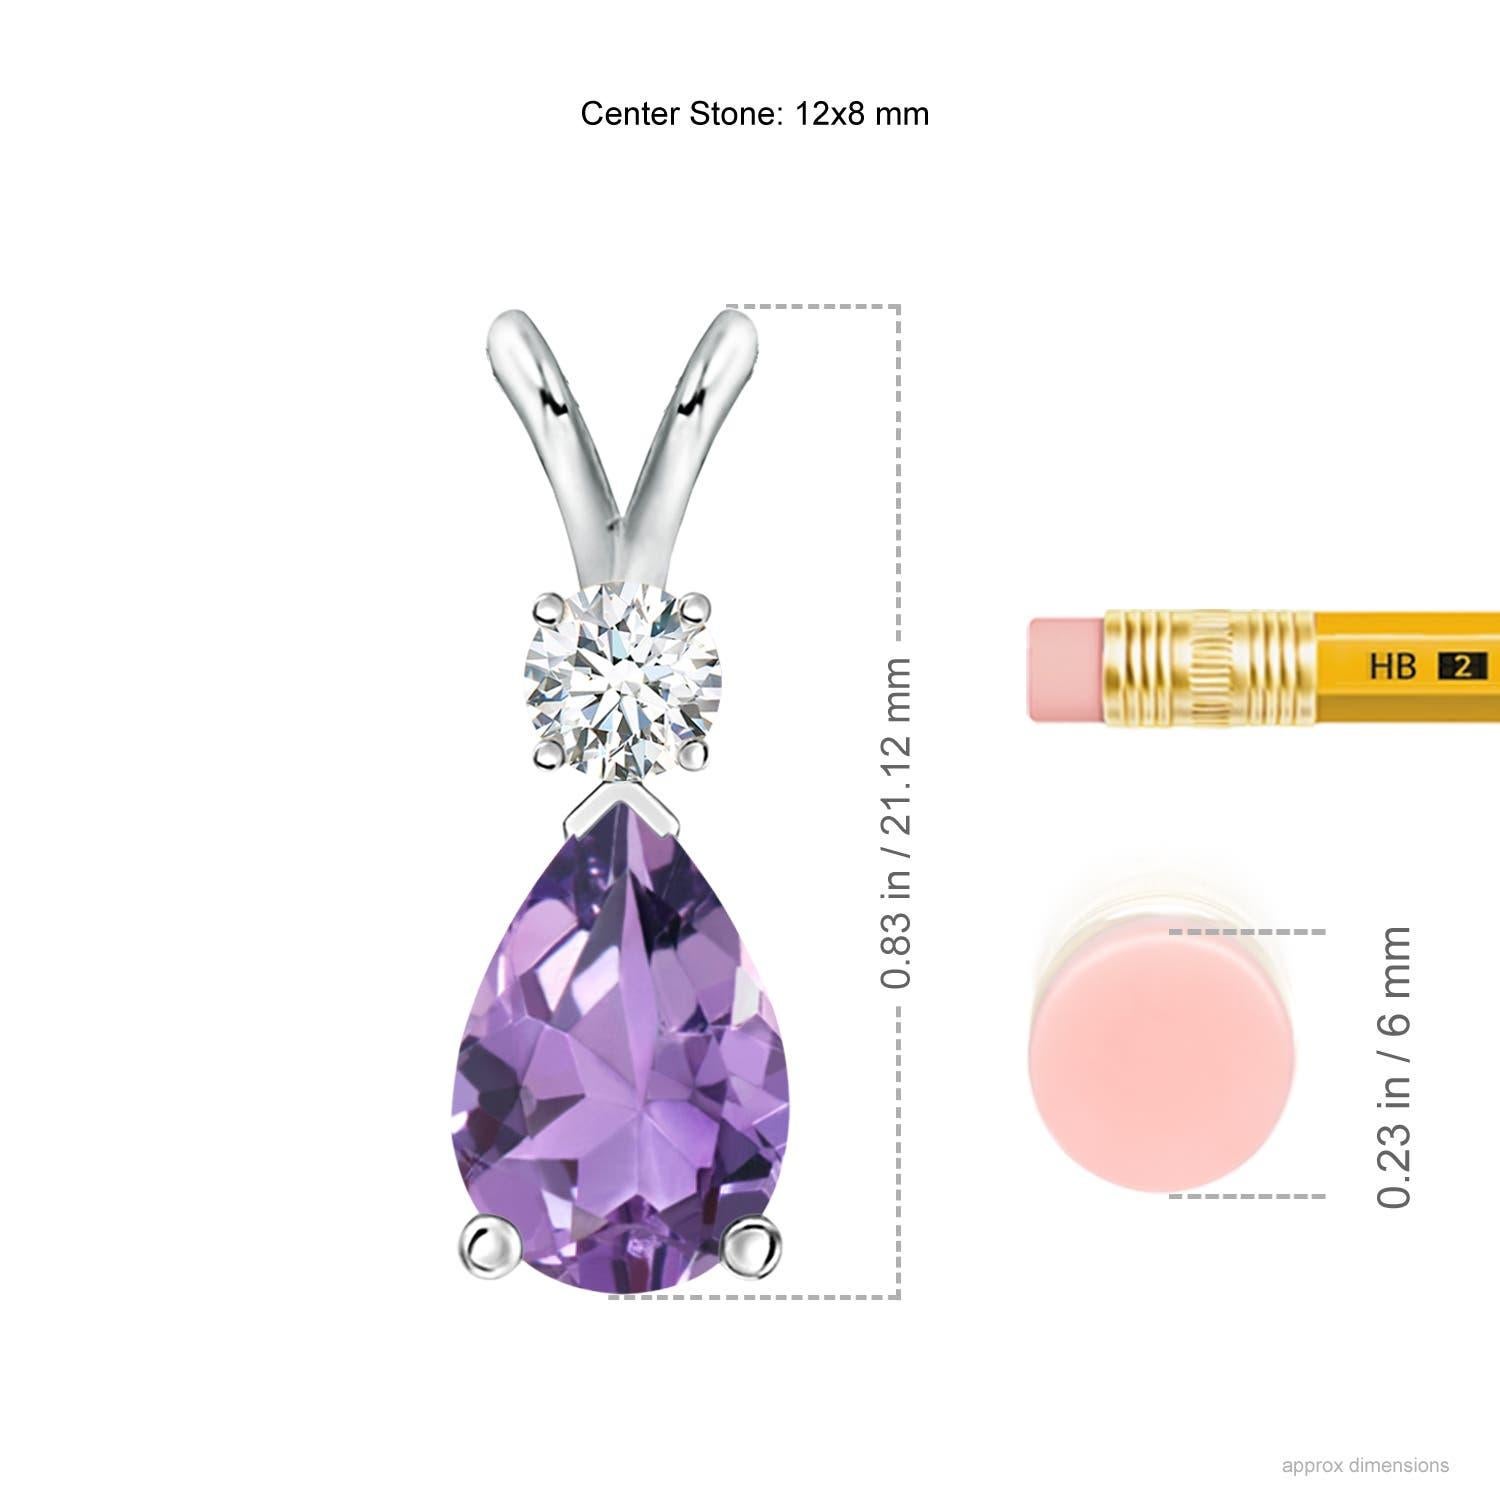 Una amatista de color púrpura intenso en forma de pera está engarzada y adornada con un diamante en la parte superior. Sencillo pero impresionante, este colgante de amatista en forma de lágrima con paca en V está esculpido en plata.